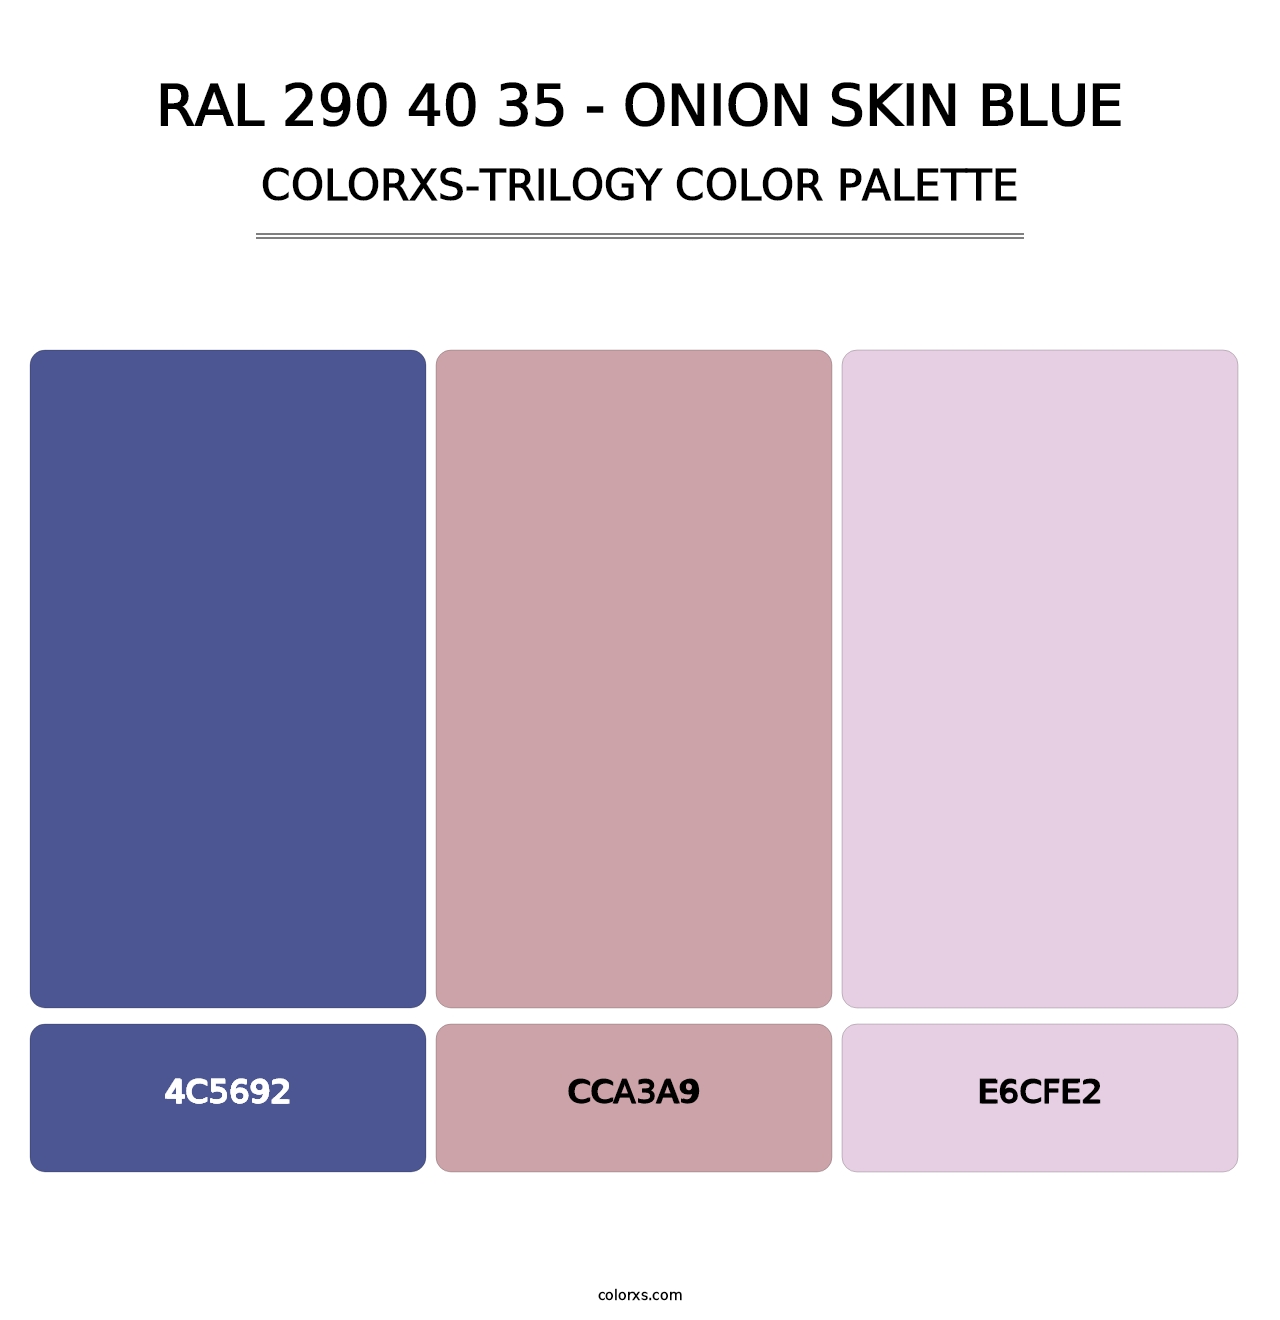 RAL 290 40 35 - Onion Skin Blue - Colorxs Trilogy Palette